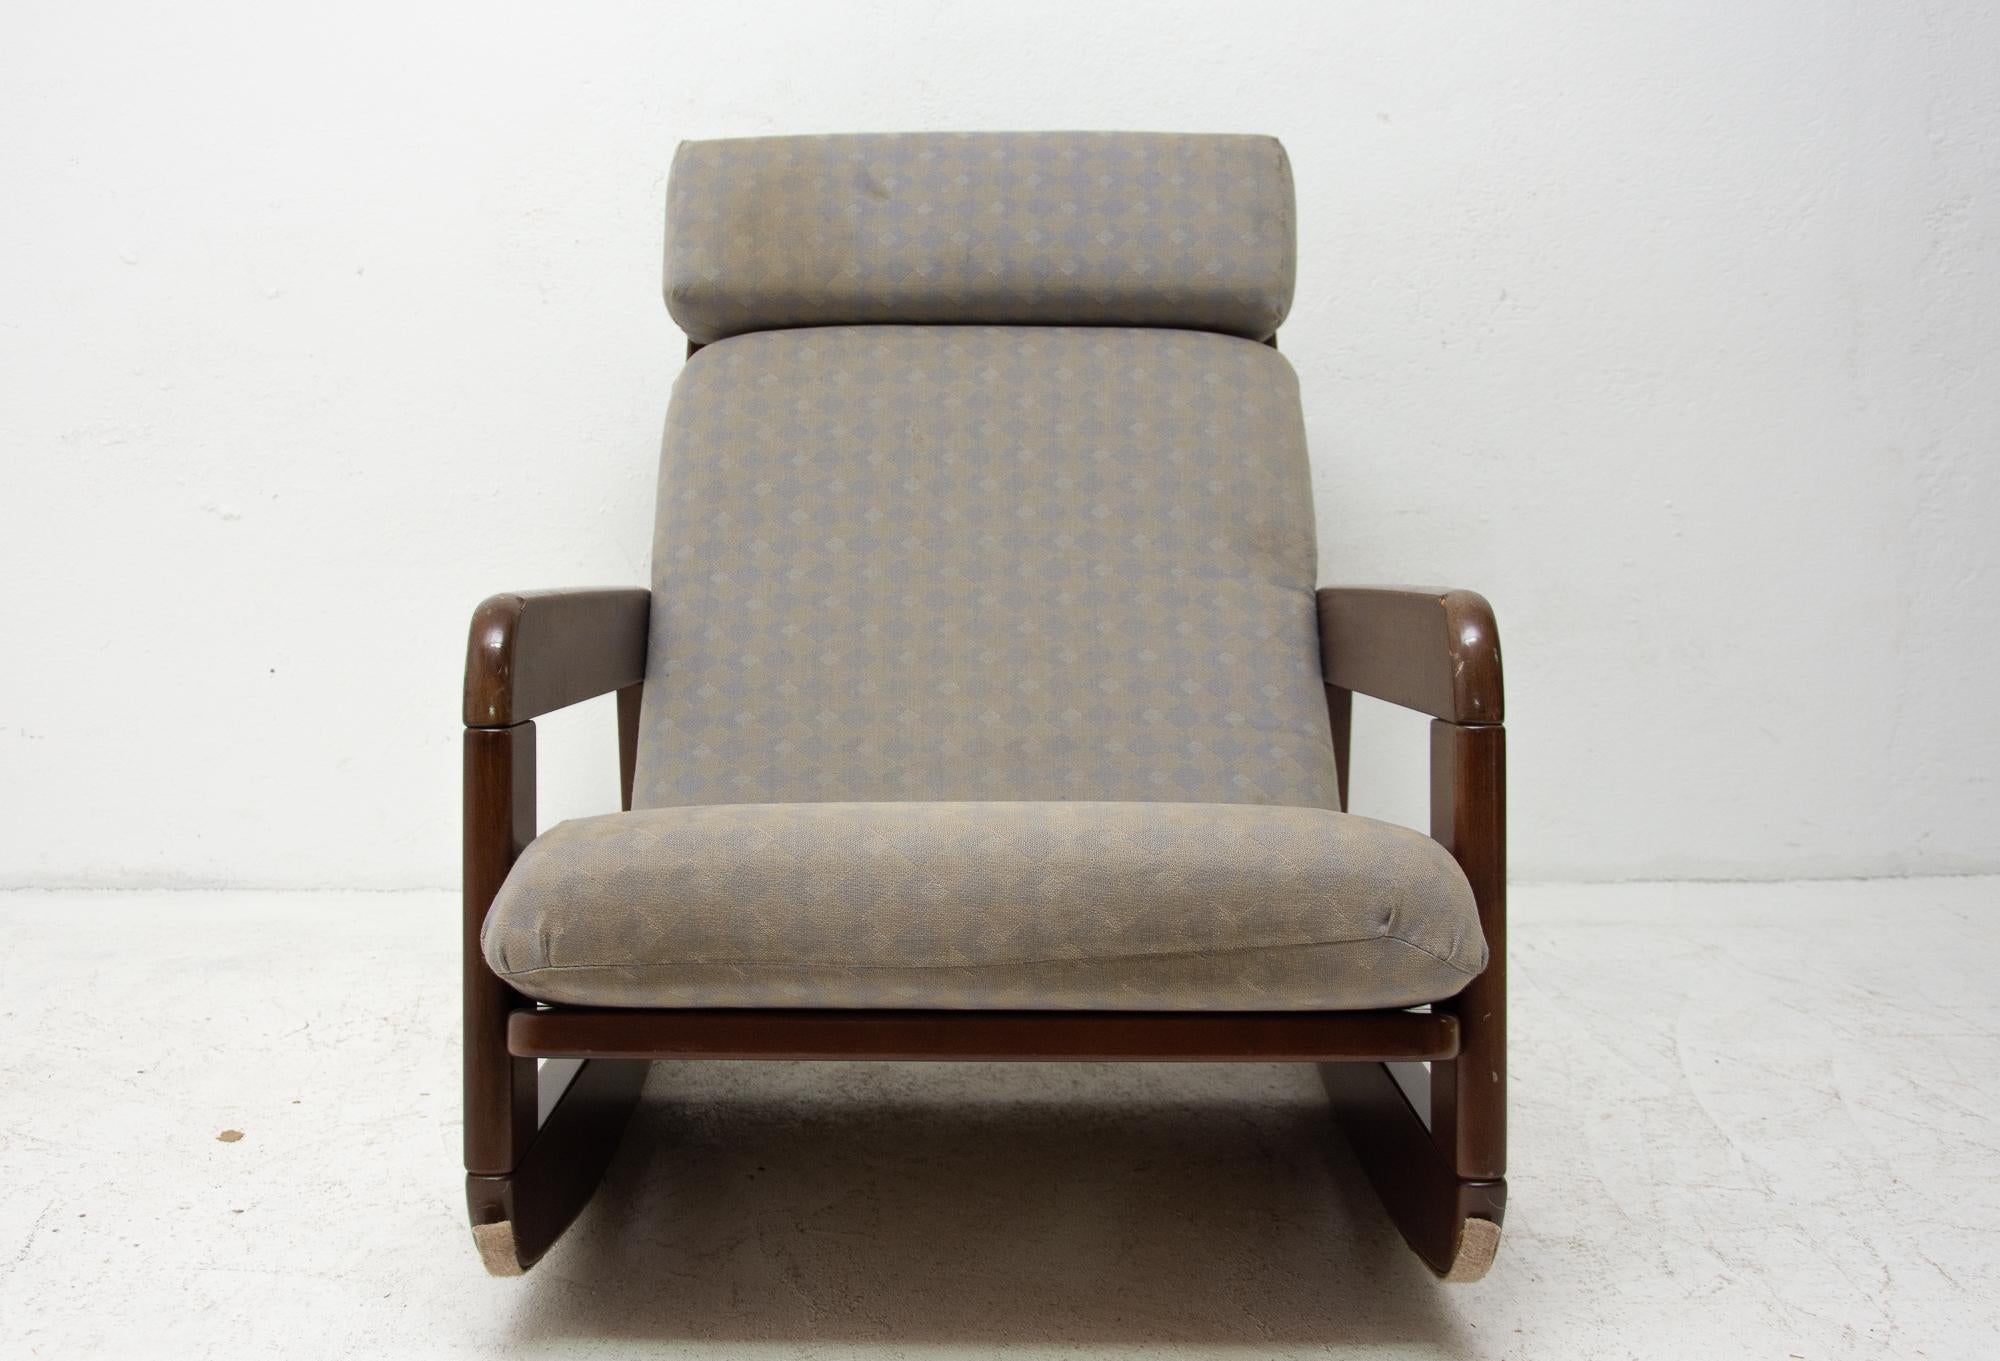 Cette chaise à bascule en bois courbé rembourrée a été fabriquée en Tchécoslovaquie dans les années 1960. Le cadre est probablement en bois de hêtre teinté et présente de légers signes d'utilisation.
La tapisserie est d'origine, usée sur le siège,